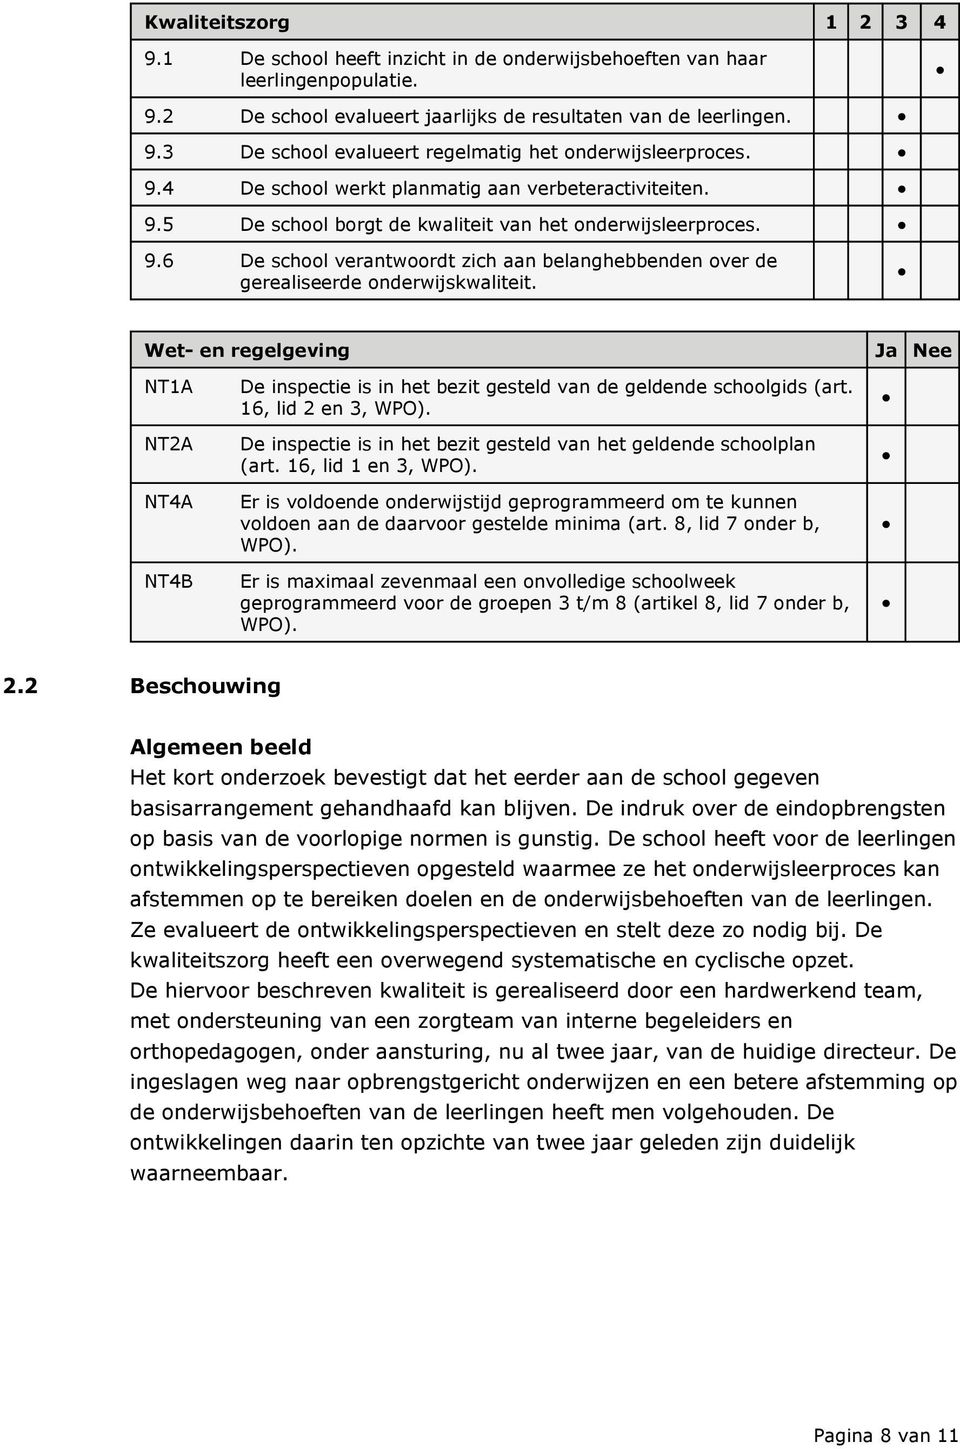 Wet- en regelgeving Ja Nee NT1A NT2A NT4A NT4B De inspectie is in het bezit gesteld van de geldende schoolgids (art. 16, lid 2 en 3, WPO).